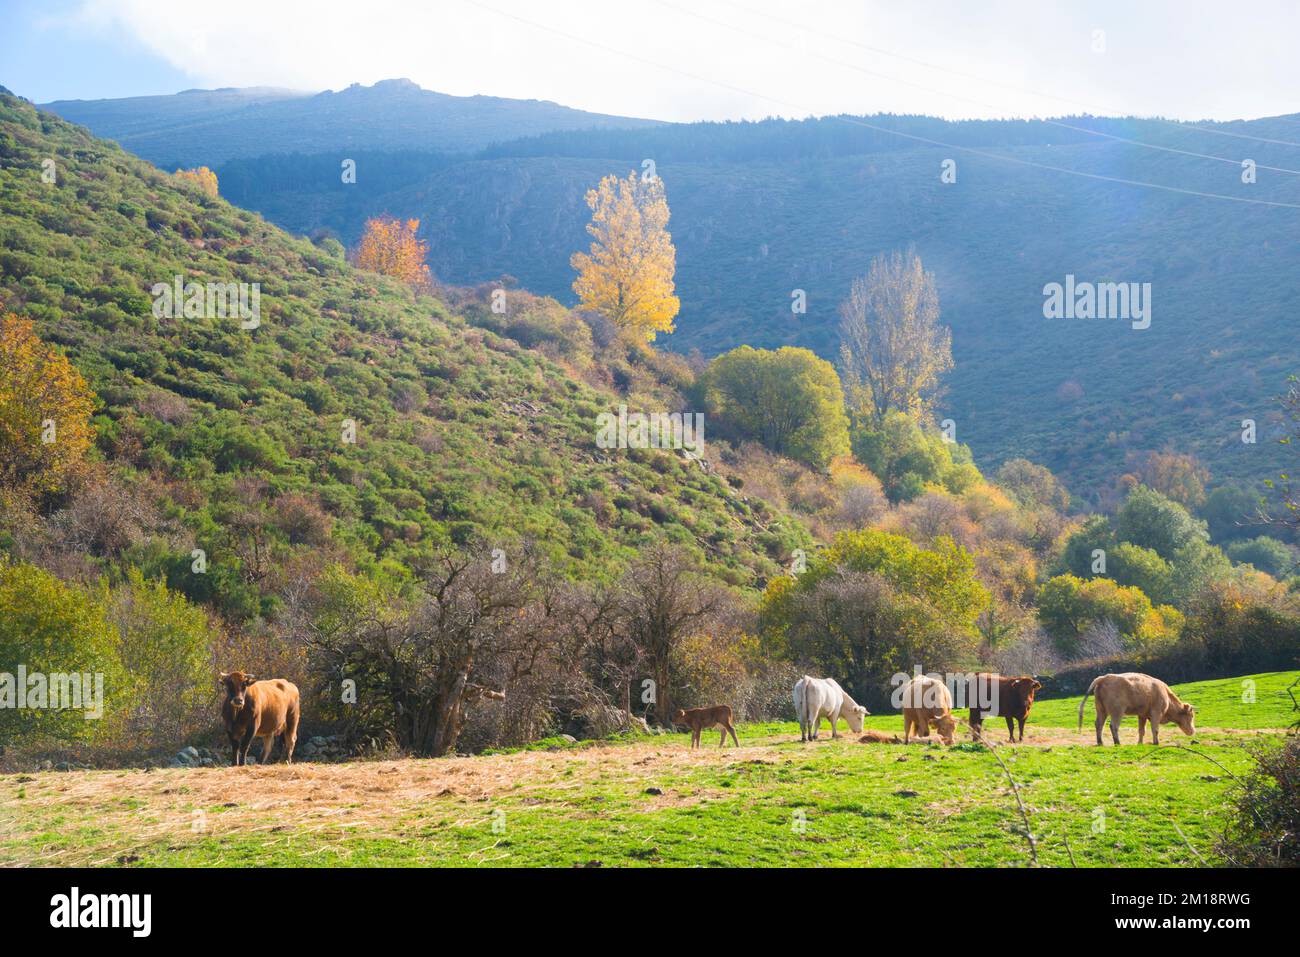 Vaches dans un pré.Somosierra, province de Madrid, Espagne. Banque D'Images